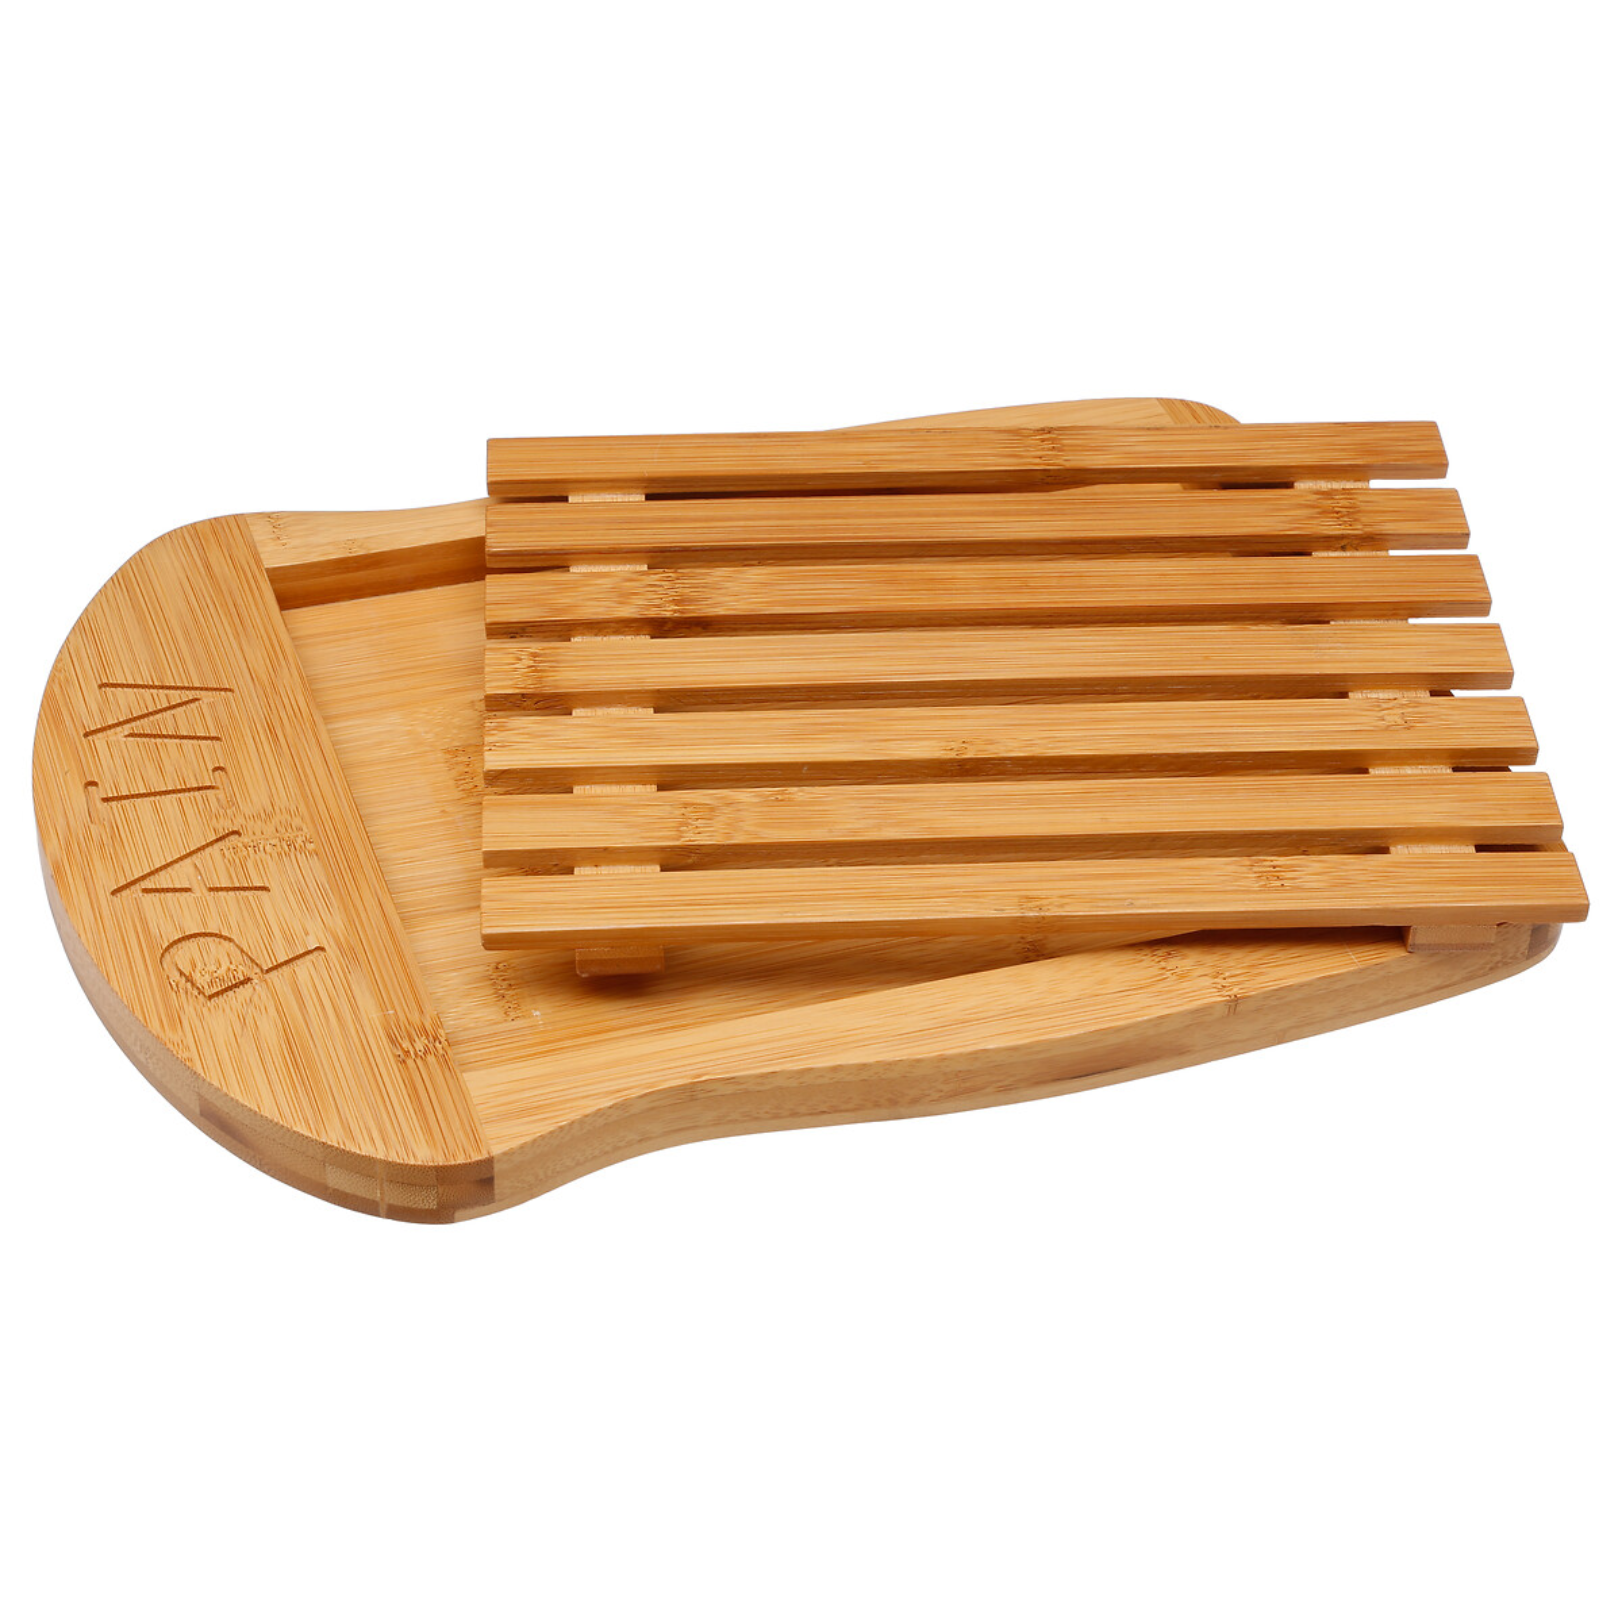 Tagliere pane in bambù con vassoio porta briciole 34x26 cm - Nami